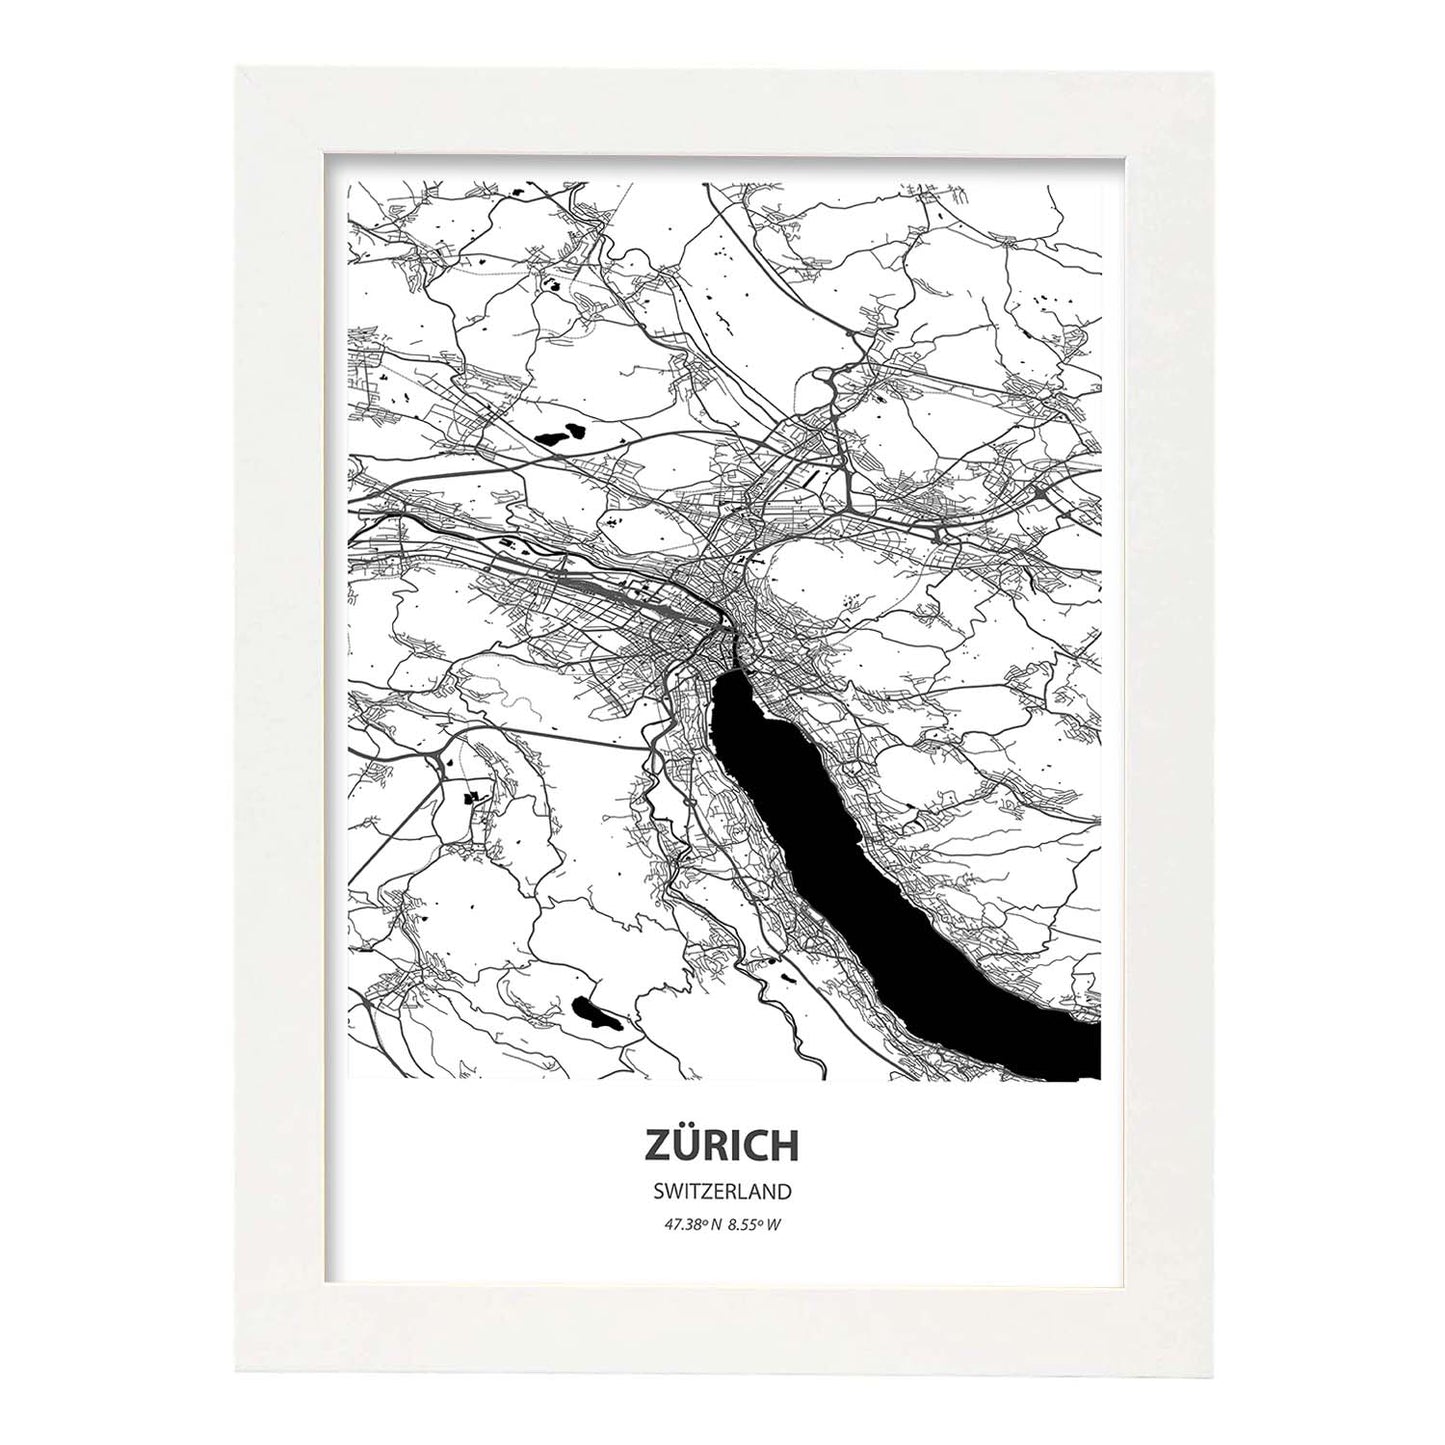 Poster con mapa de Zurich - Suiza. Láminas de ciudades de Europa con mares y ríos en color negro.-Artwork-Nacnic-A4-Marco Blanco-Nacnic Estudio SL